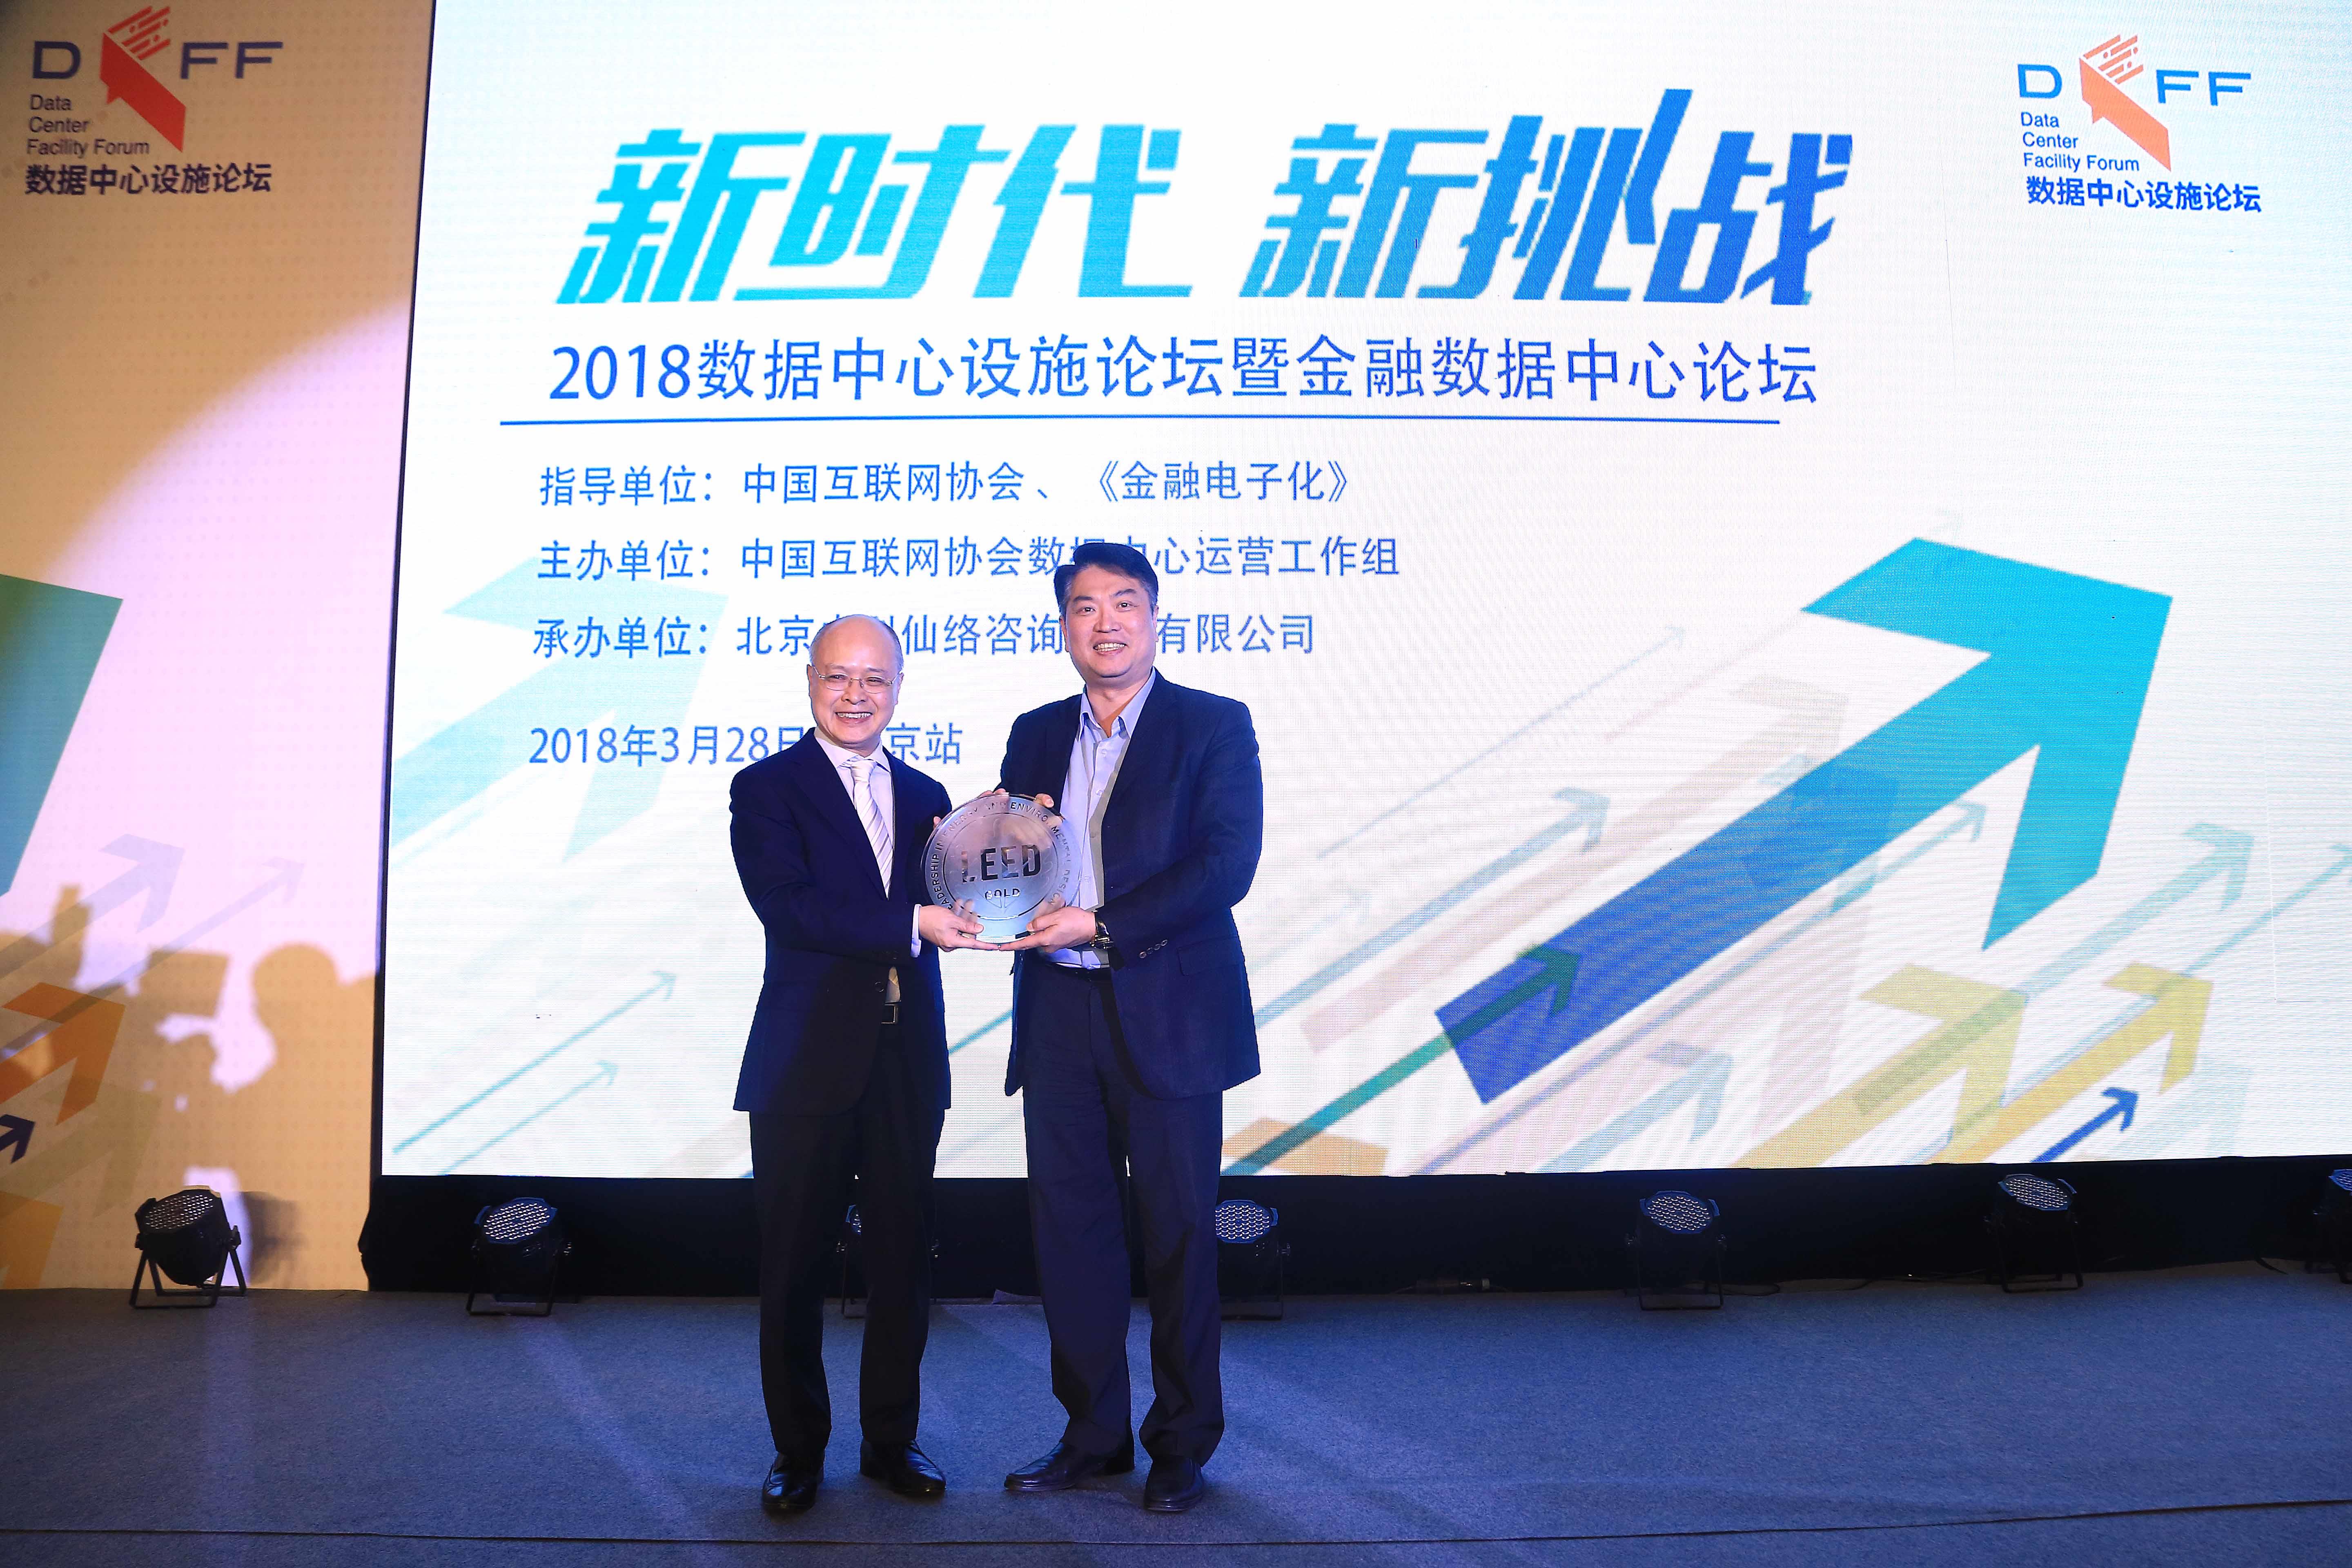 台达吴江数据中心成为全球首个获LEED v4 ID+C金级认证机房 绿机房建设开启新里程